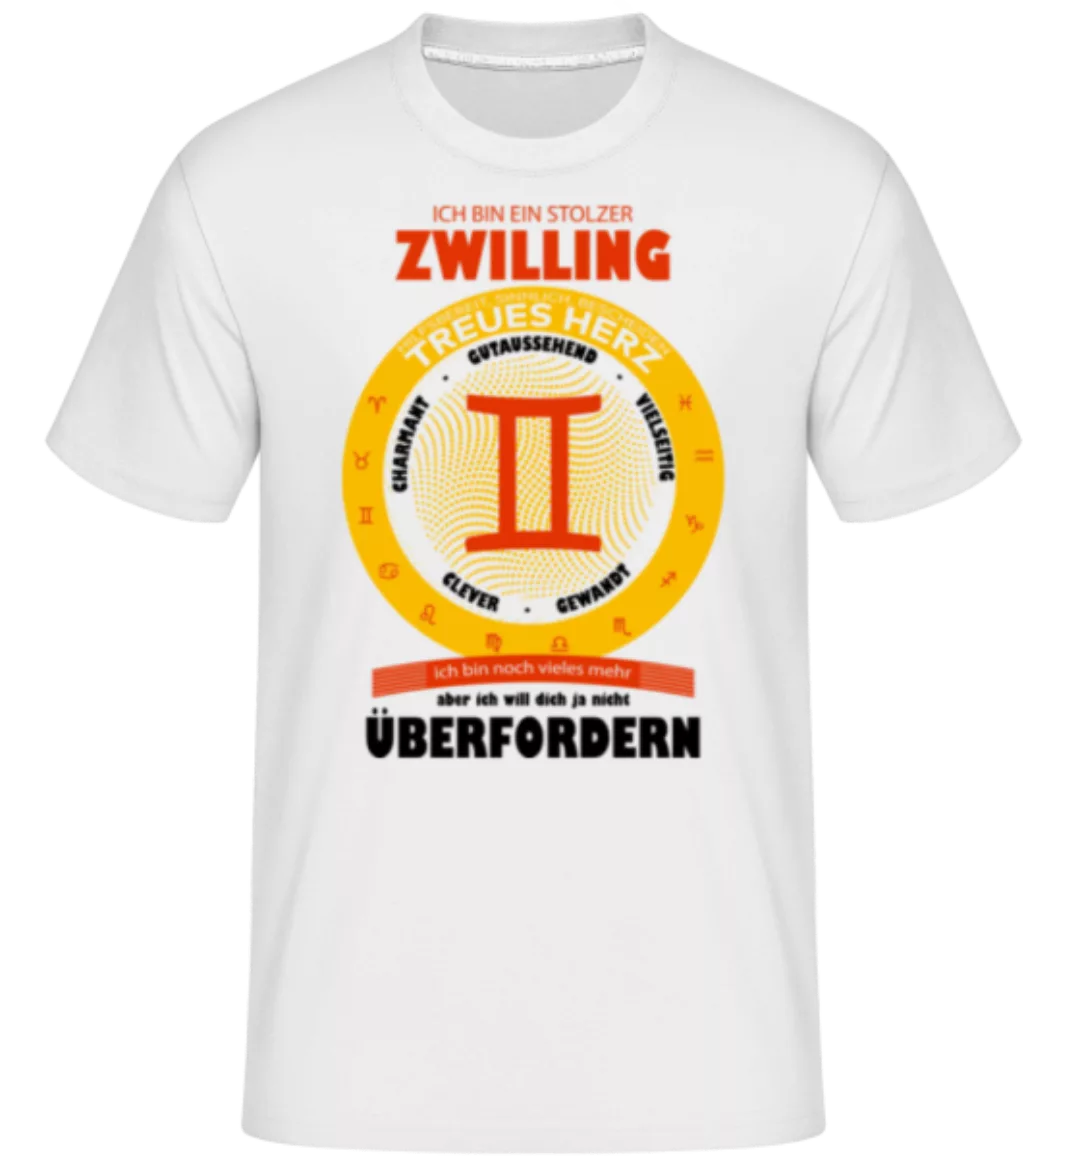 Zwilling Treues Herz · Shirtinator Männer T-Shirt günstig online kaufen